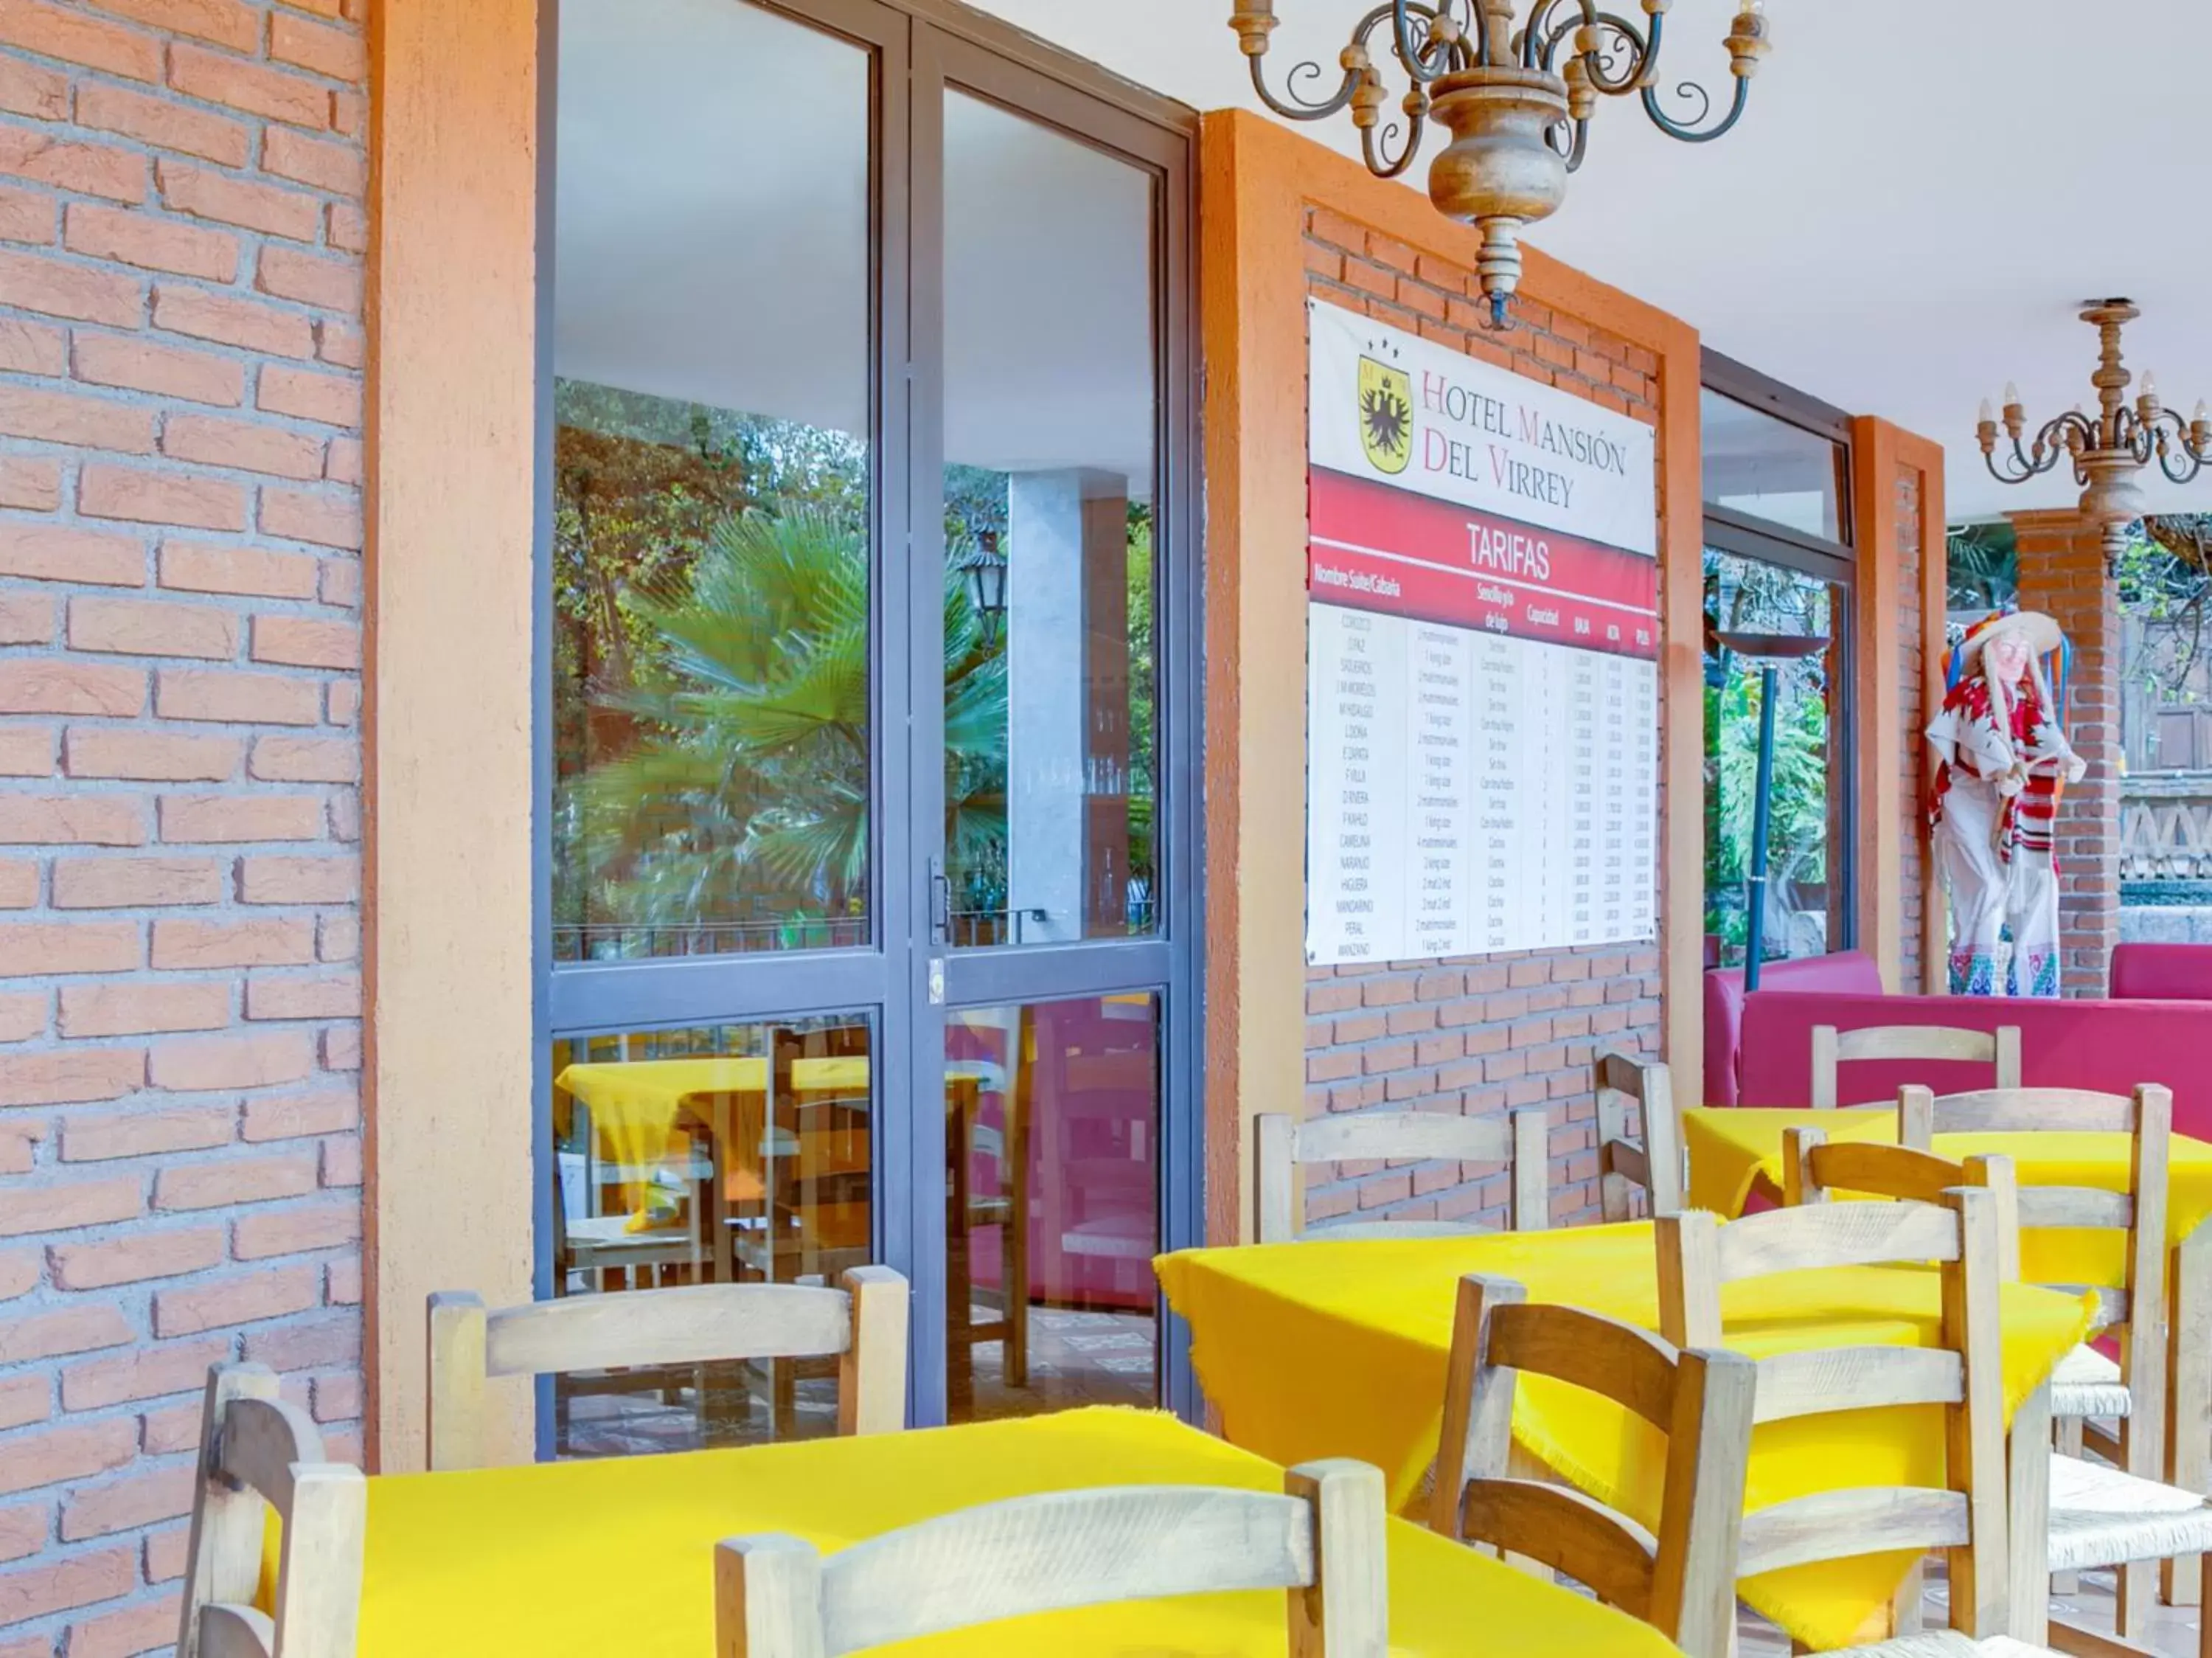 Restaurant/places to eat in Mansión del Virrey